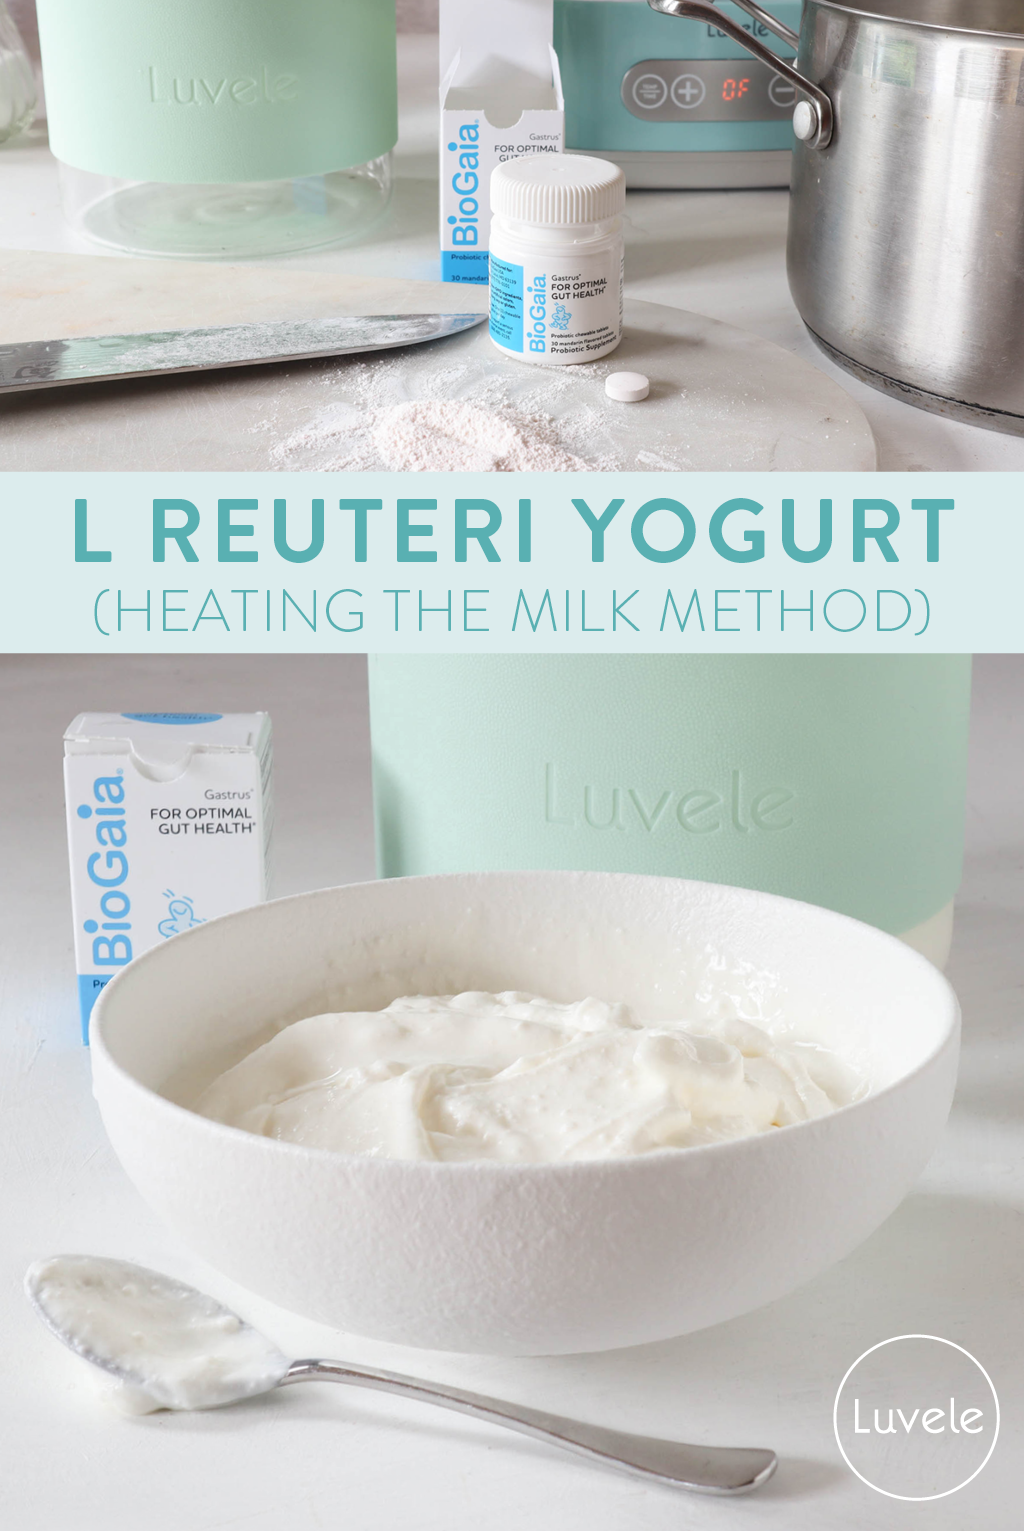 L reuteri yogurt